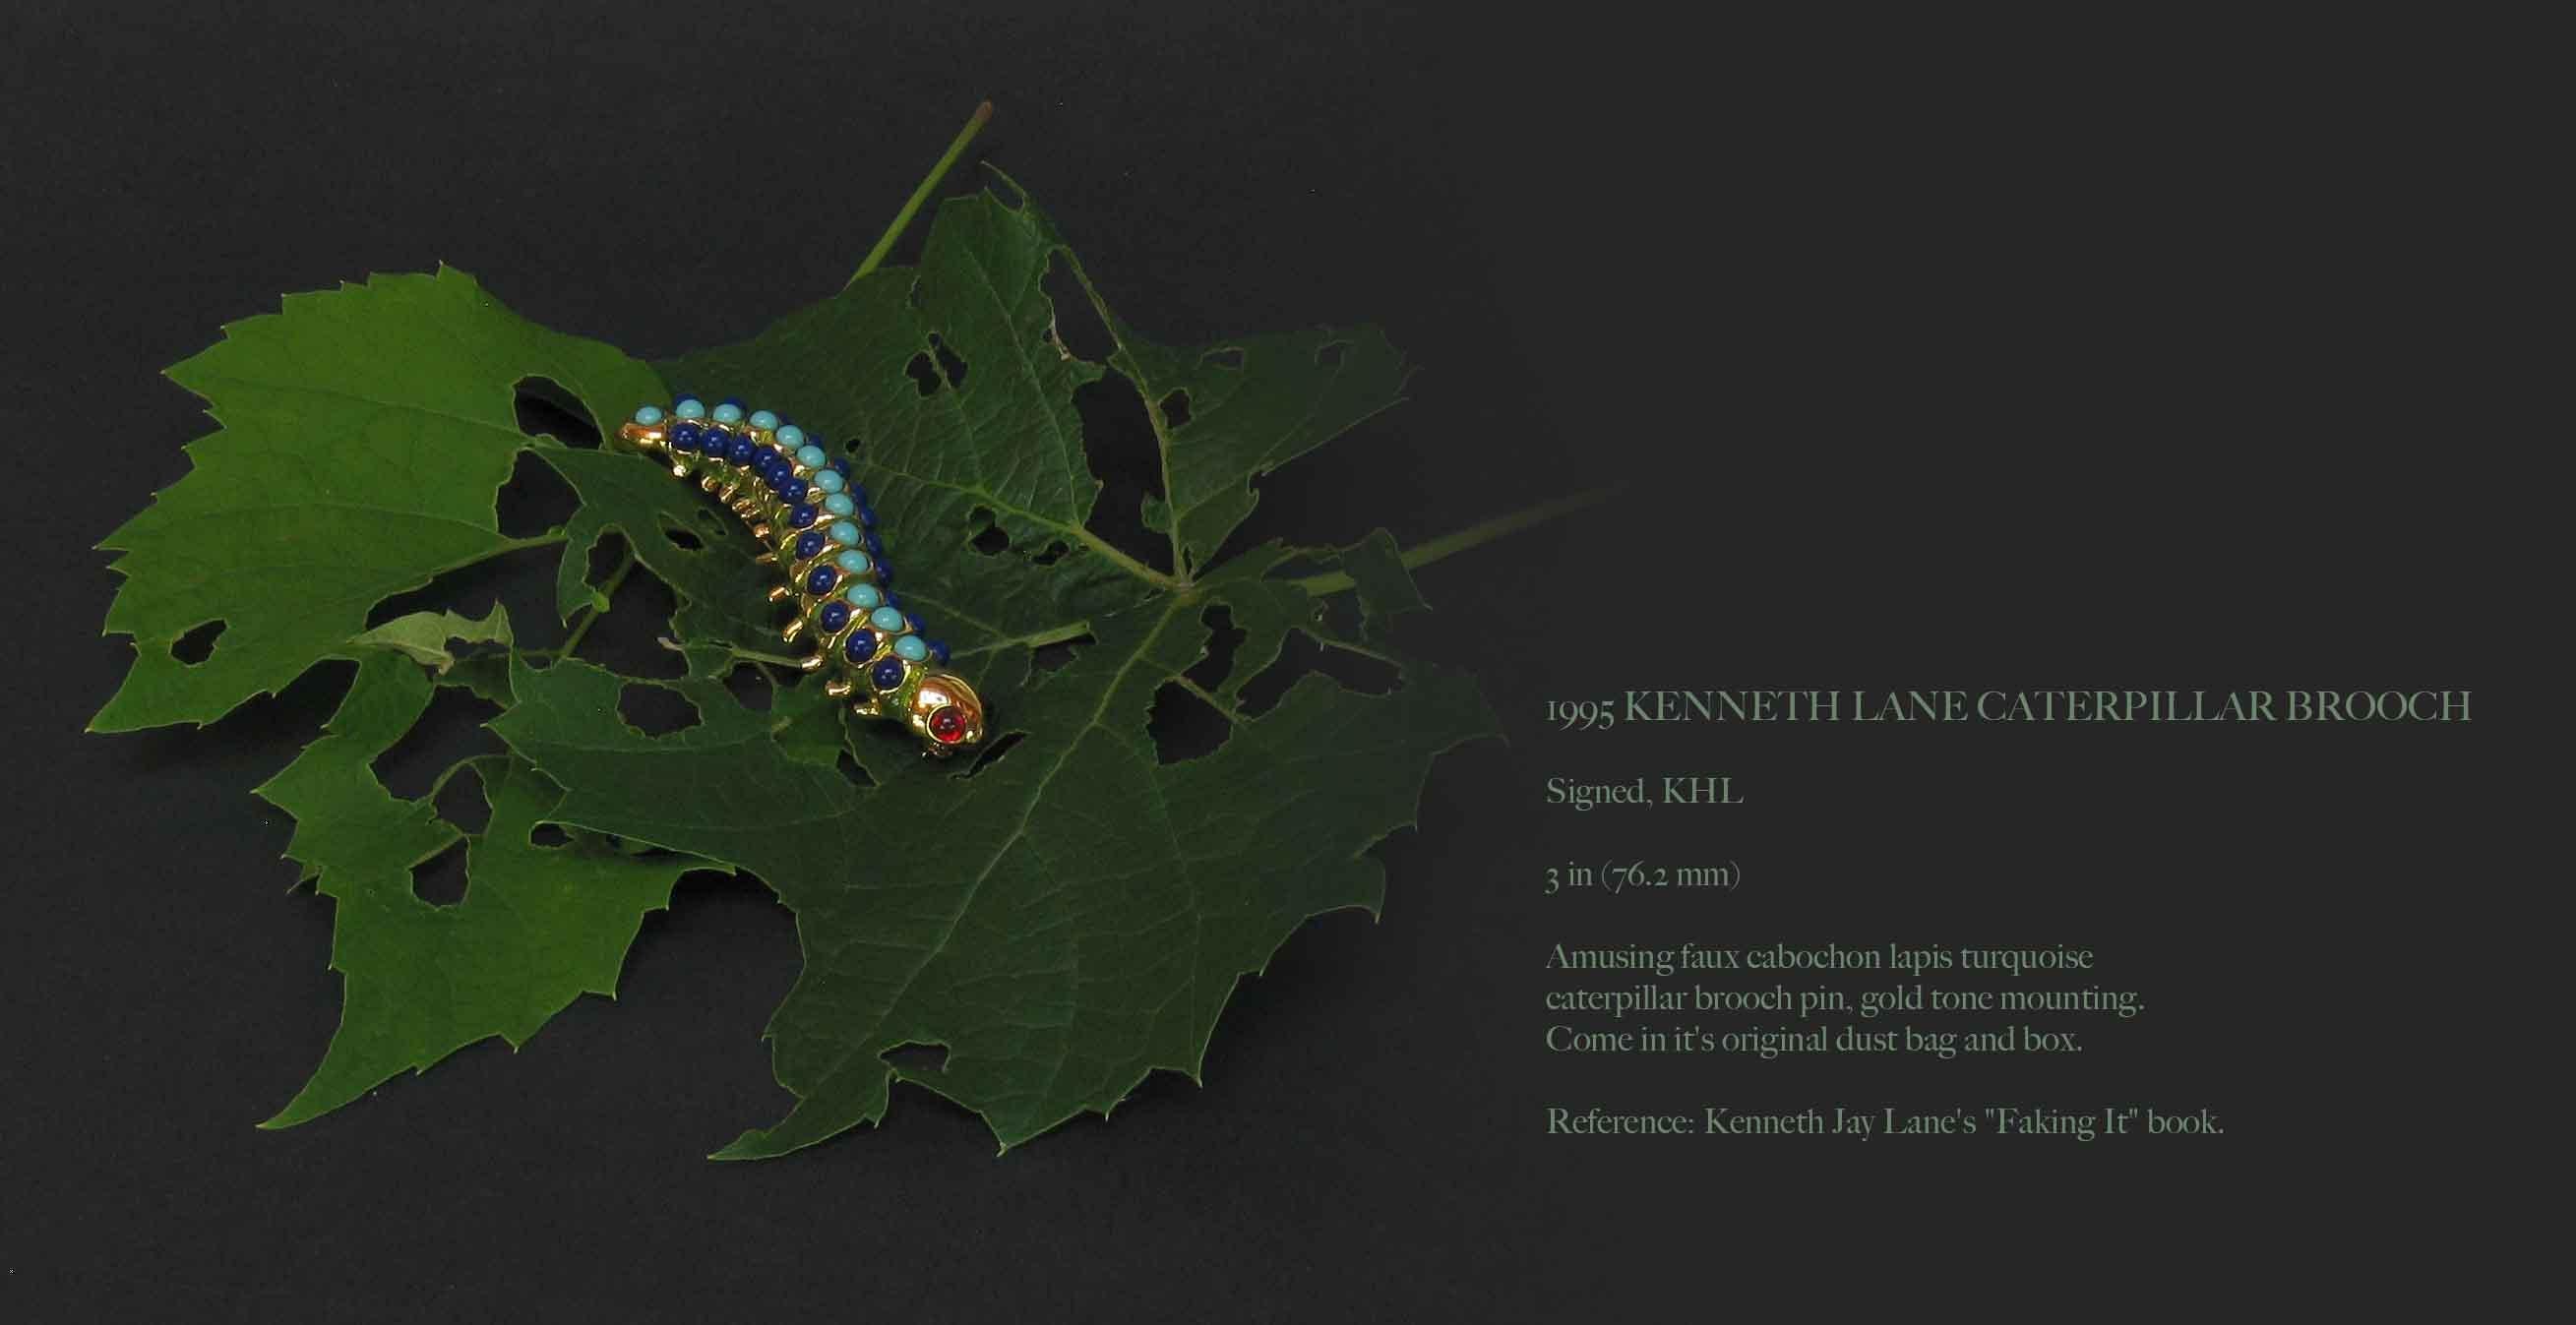 Kenneth Lane Caterpillar-Brosche, 1995

Unterschrieben, KHL

3